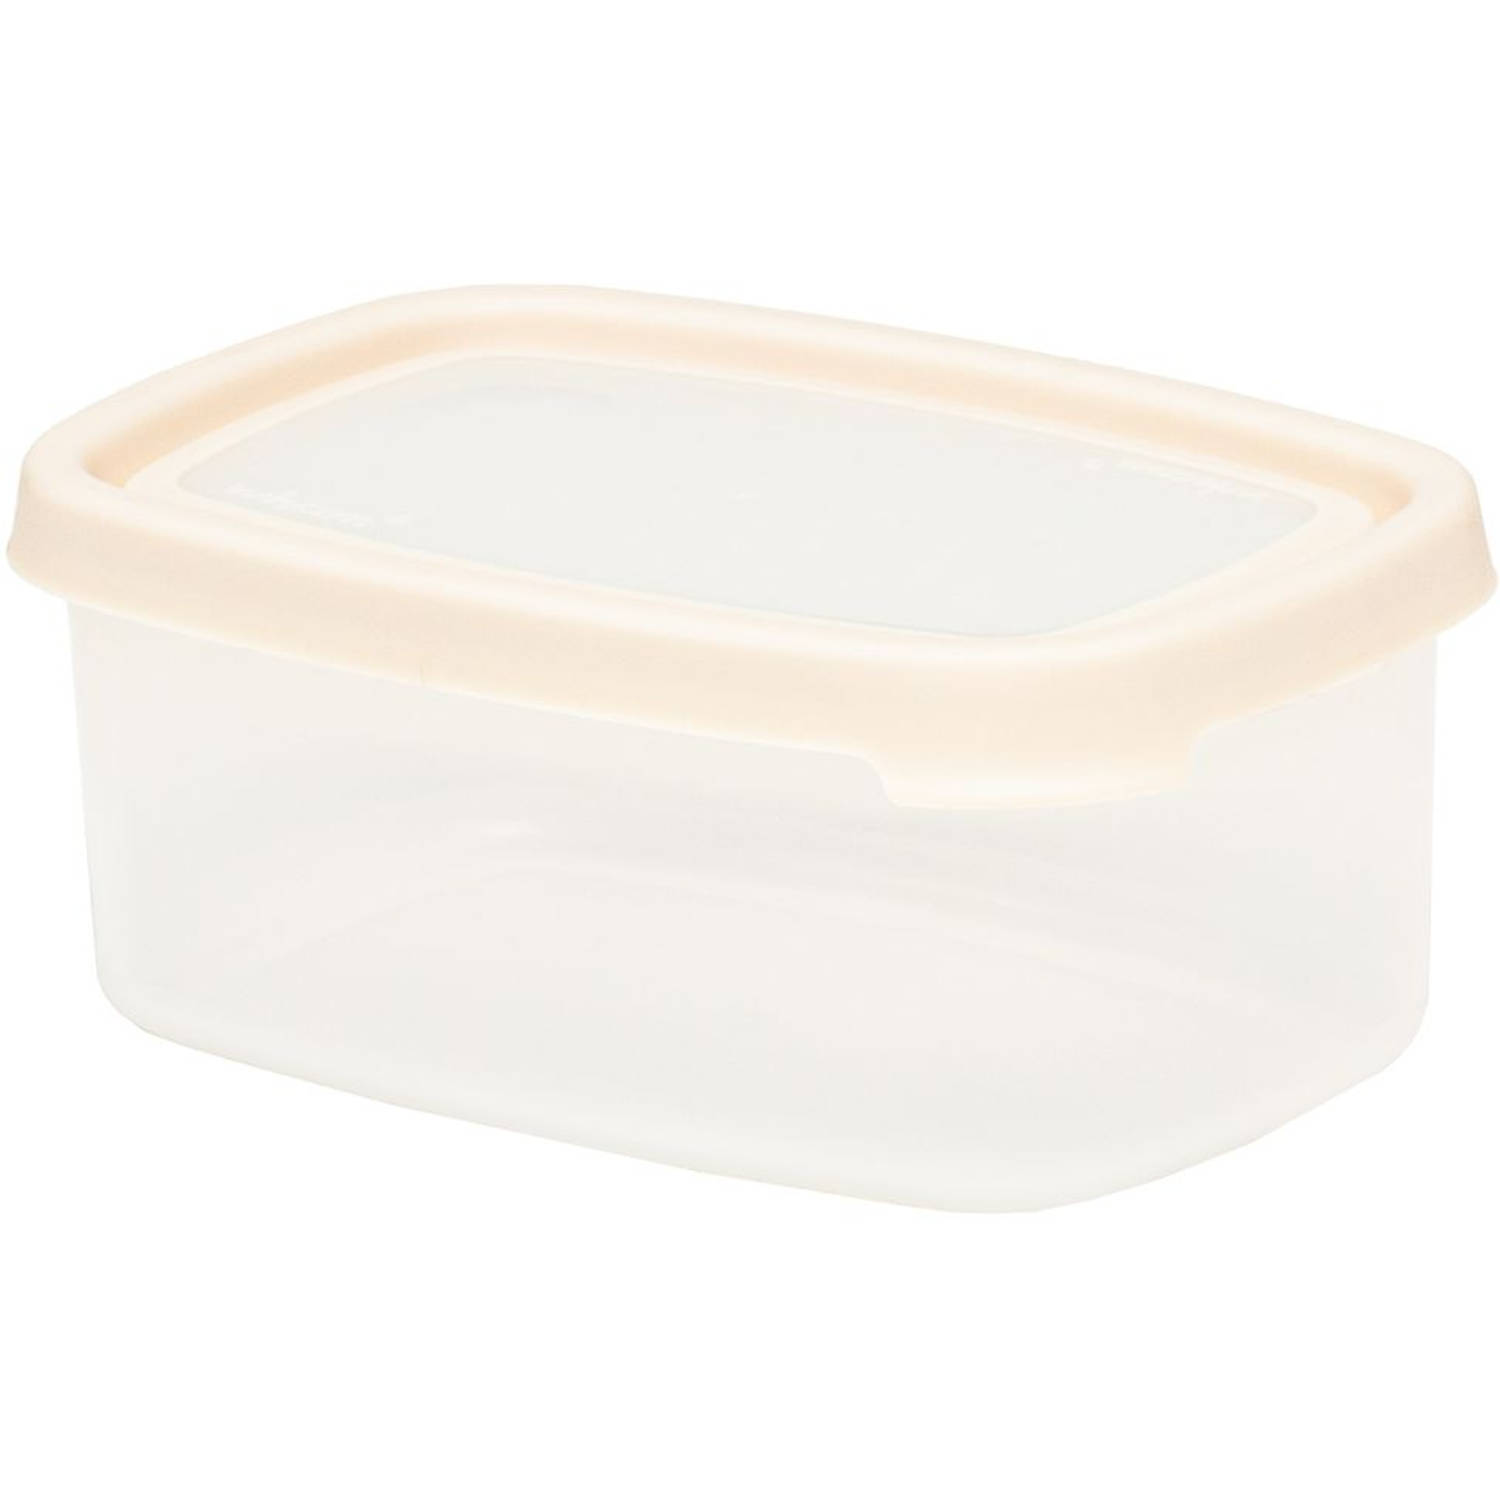 Wham - Opbergbox Seal It 1,1 liter Set van 3 Stuks - Polypropyleen - Transparant